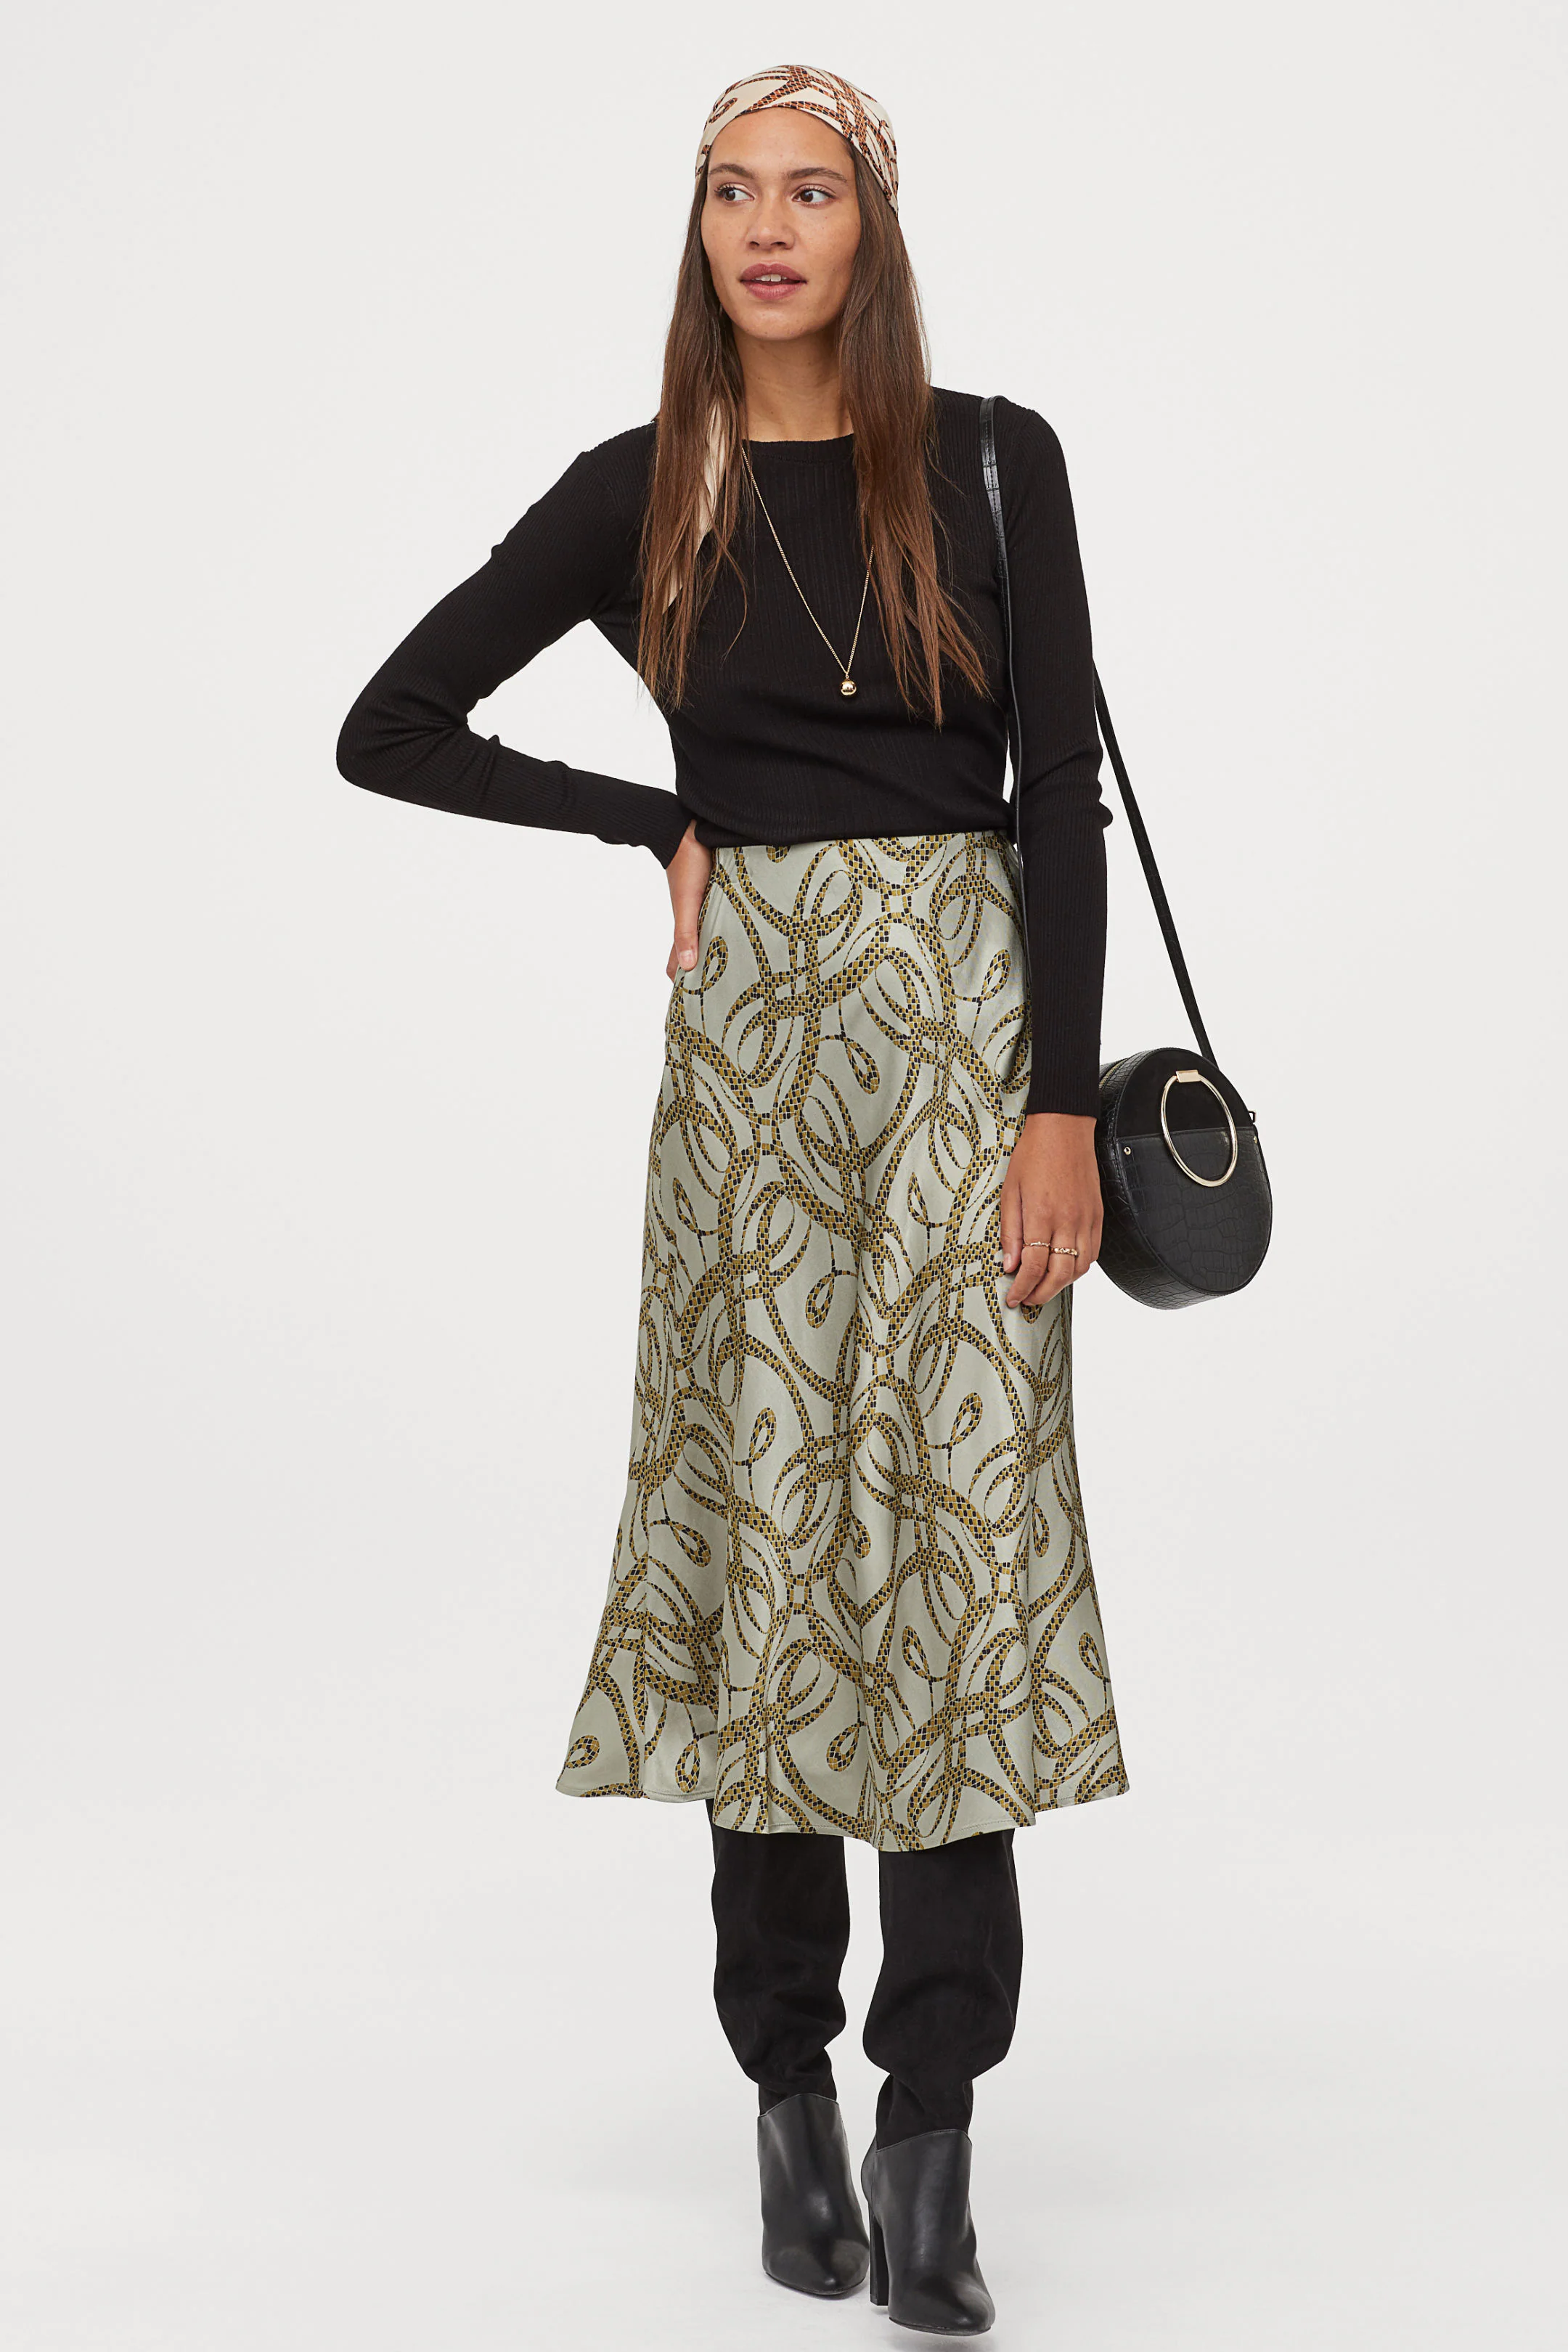 Fotos: 10 faldas midi de la nueva colección de H&M para lucir tipazo otoño Mujer Hoy